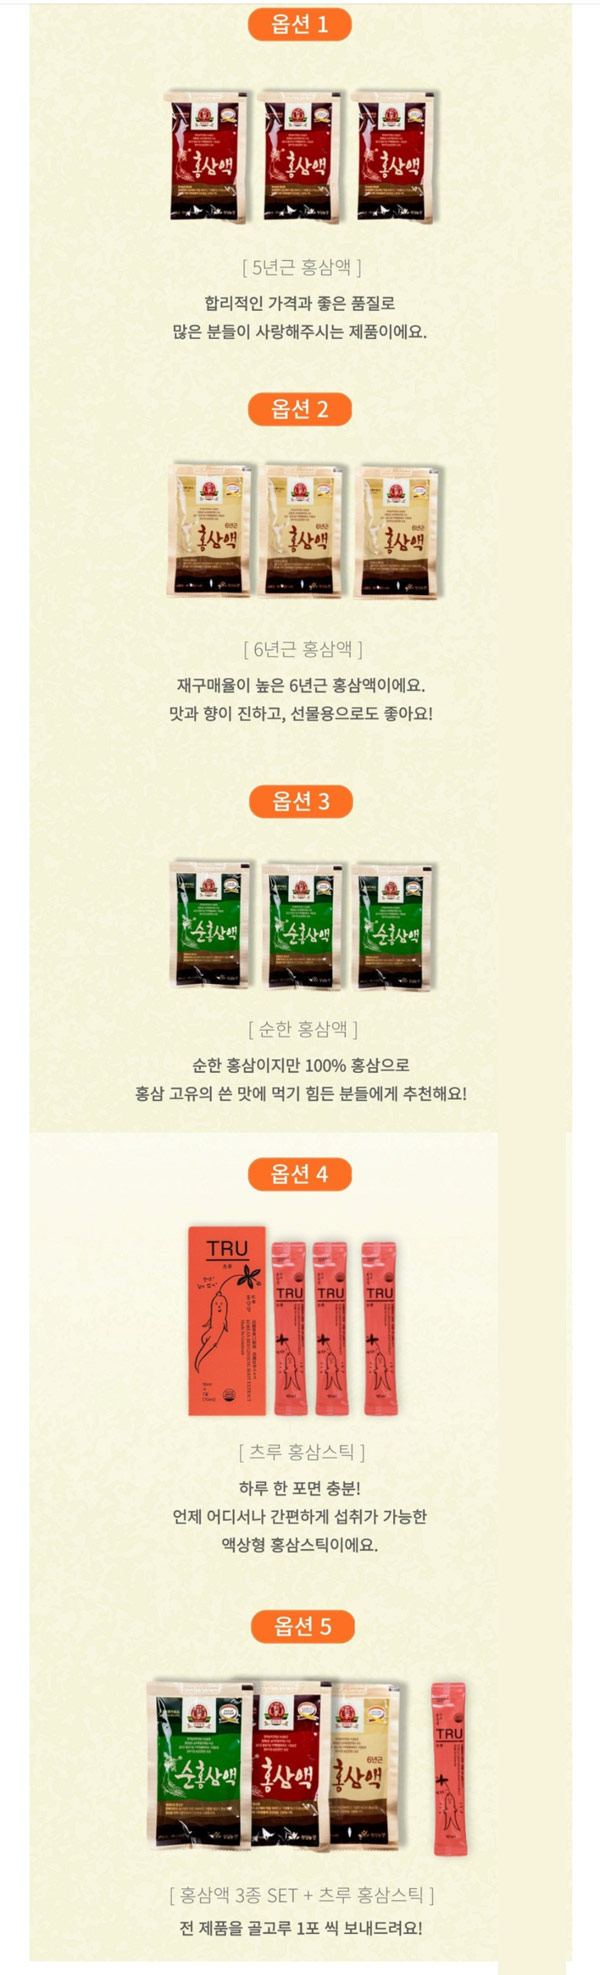 네이버 정성농장 홍삼액,홍삼스틱 무료샘플(무배)0원결제